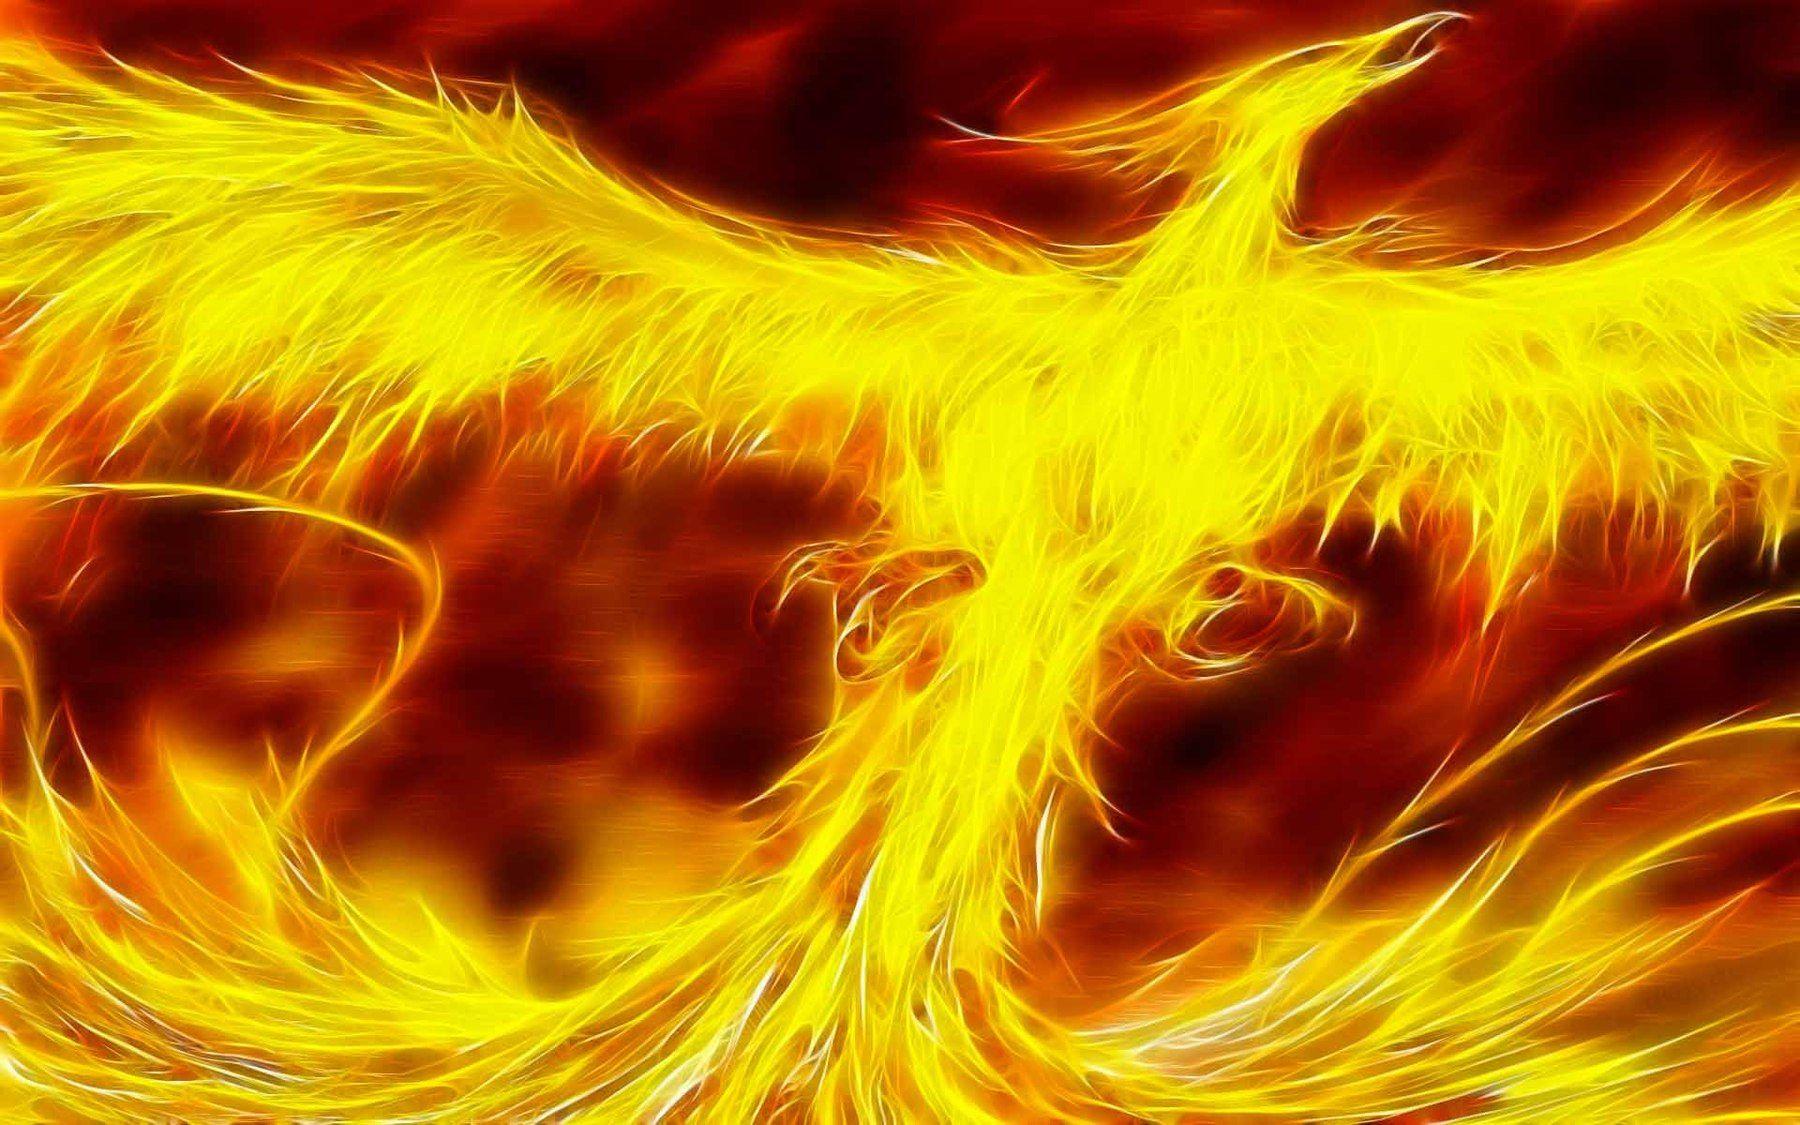 Phoenix Bird Of Fire. Phoenix Bird Fire X Bilder Zum 1800x1125px